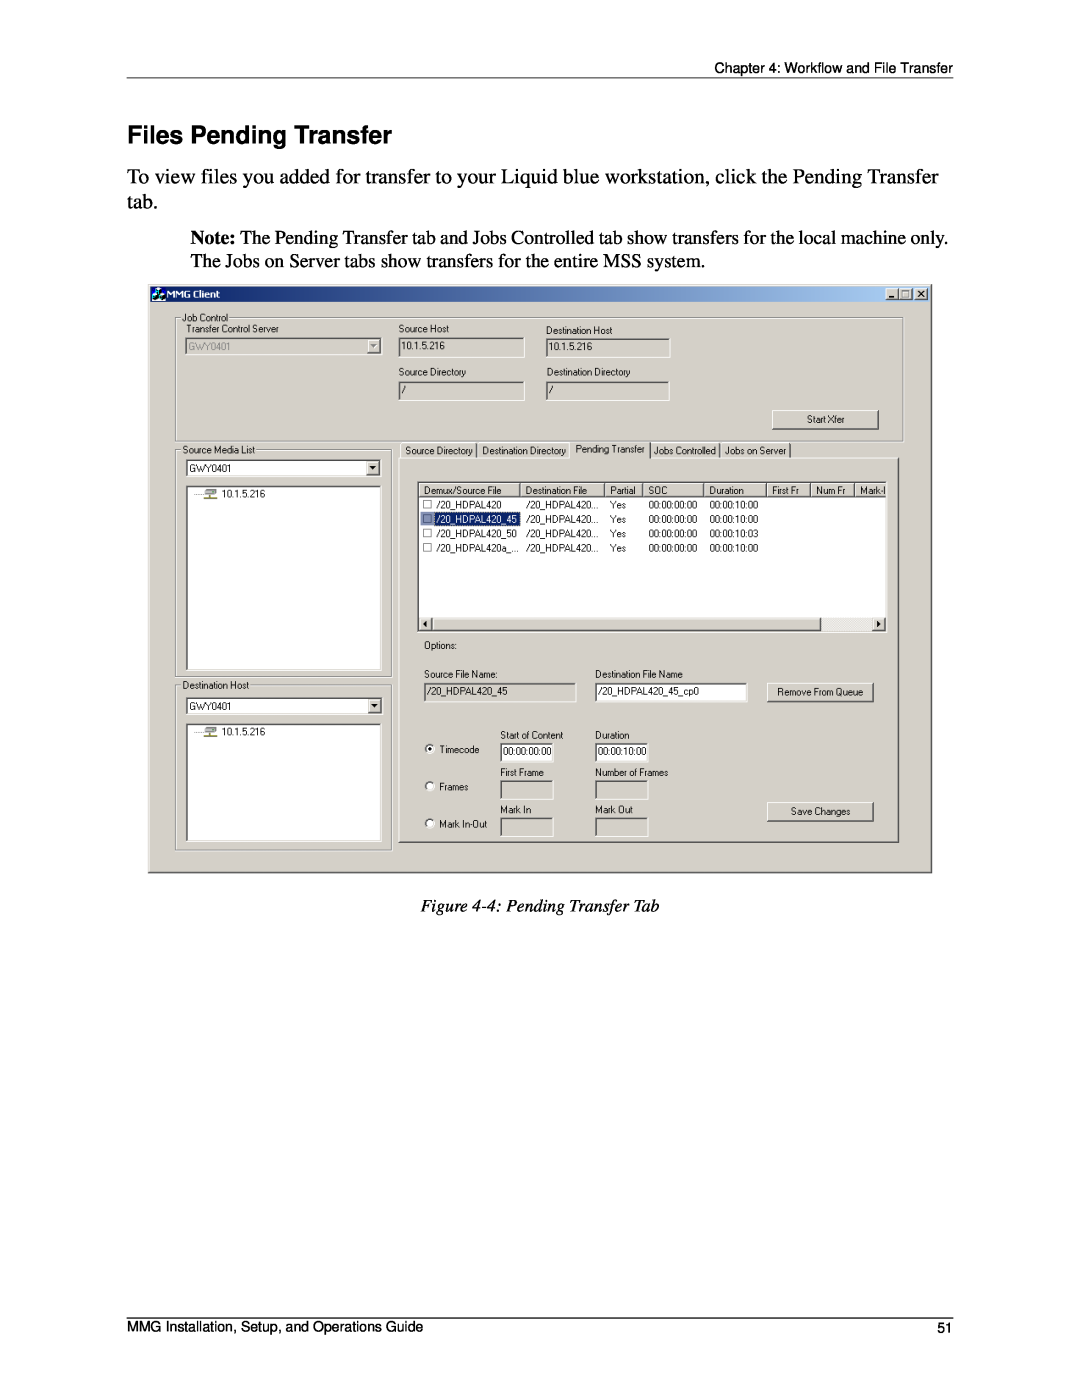 Pinnacle Design 37T100105 manual Files Pending Transfer, 4 Pending Transfer Tab, Workflow and File Transfer 